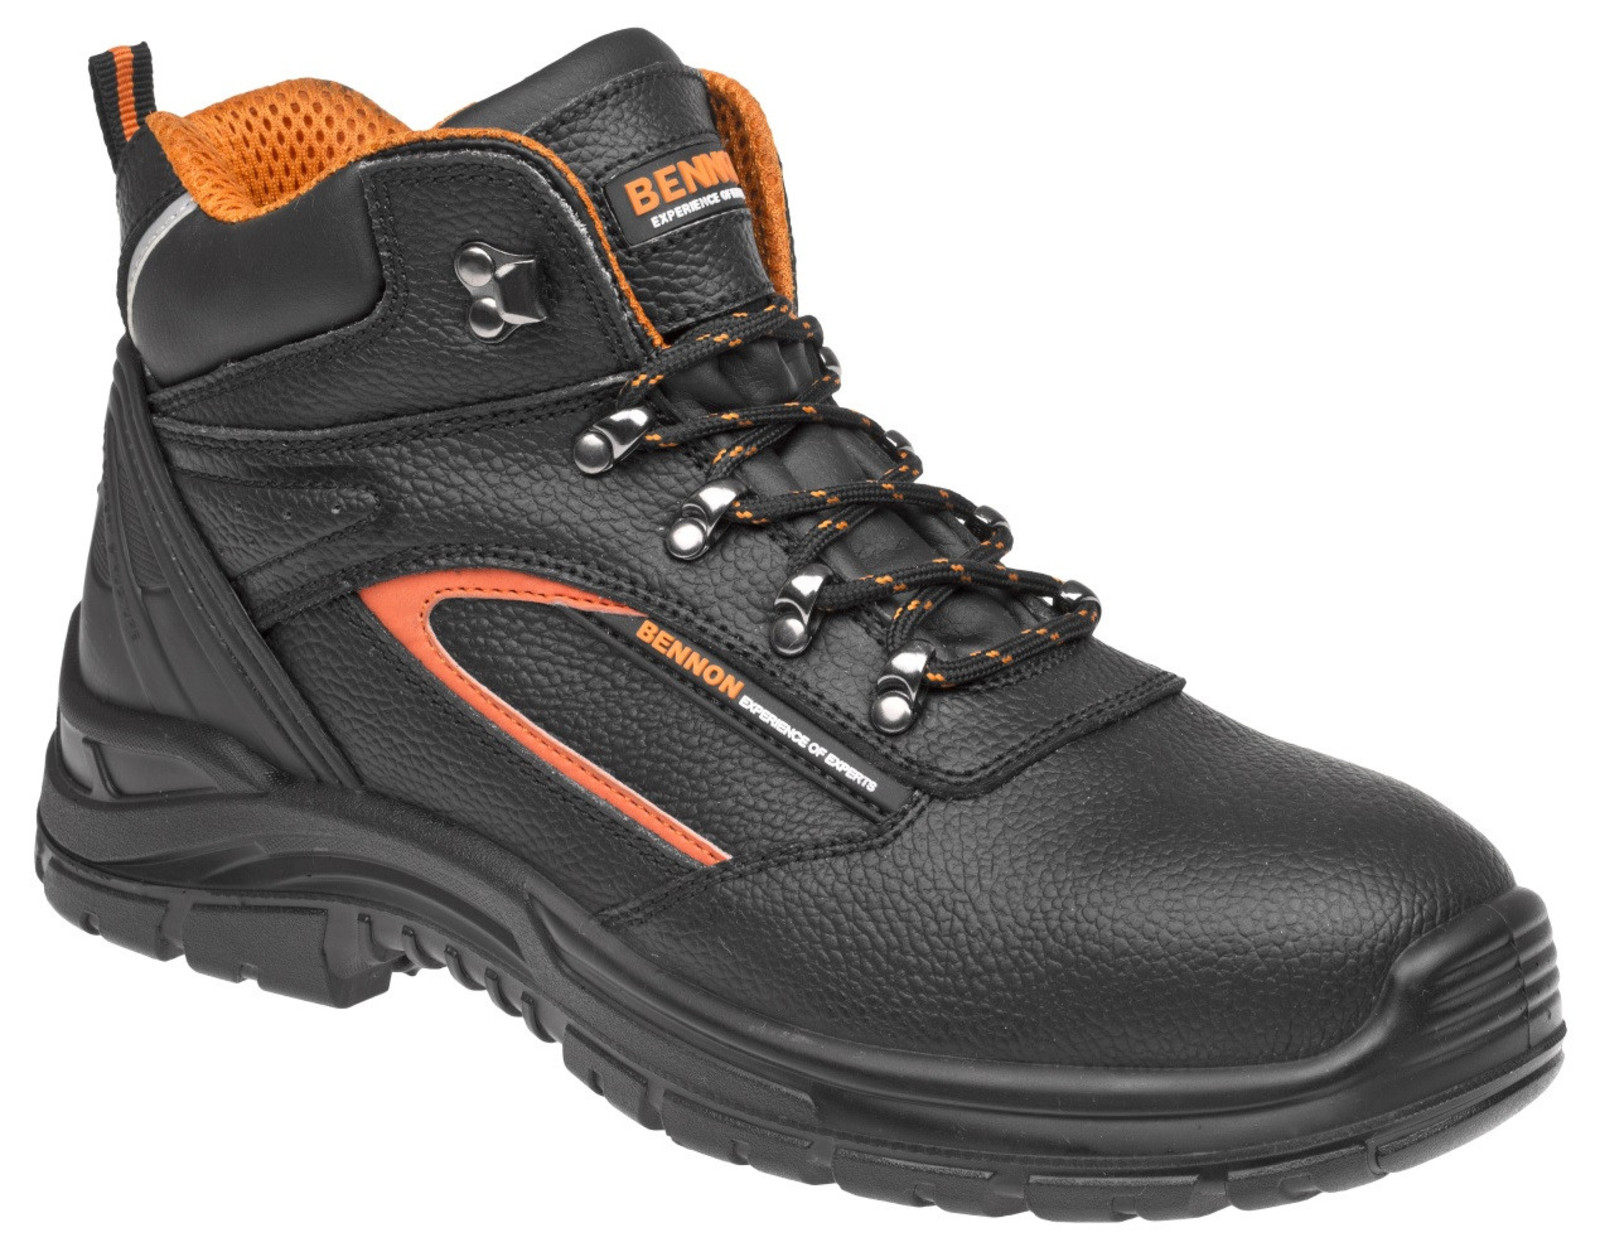 Pracovné topánky Bennon Fortis O2  - veľkosť: 40, farba: čierna